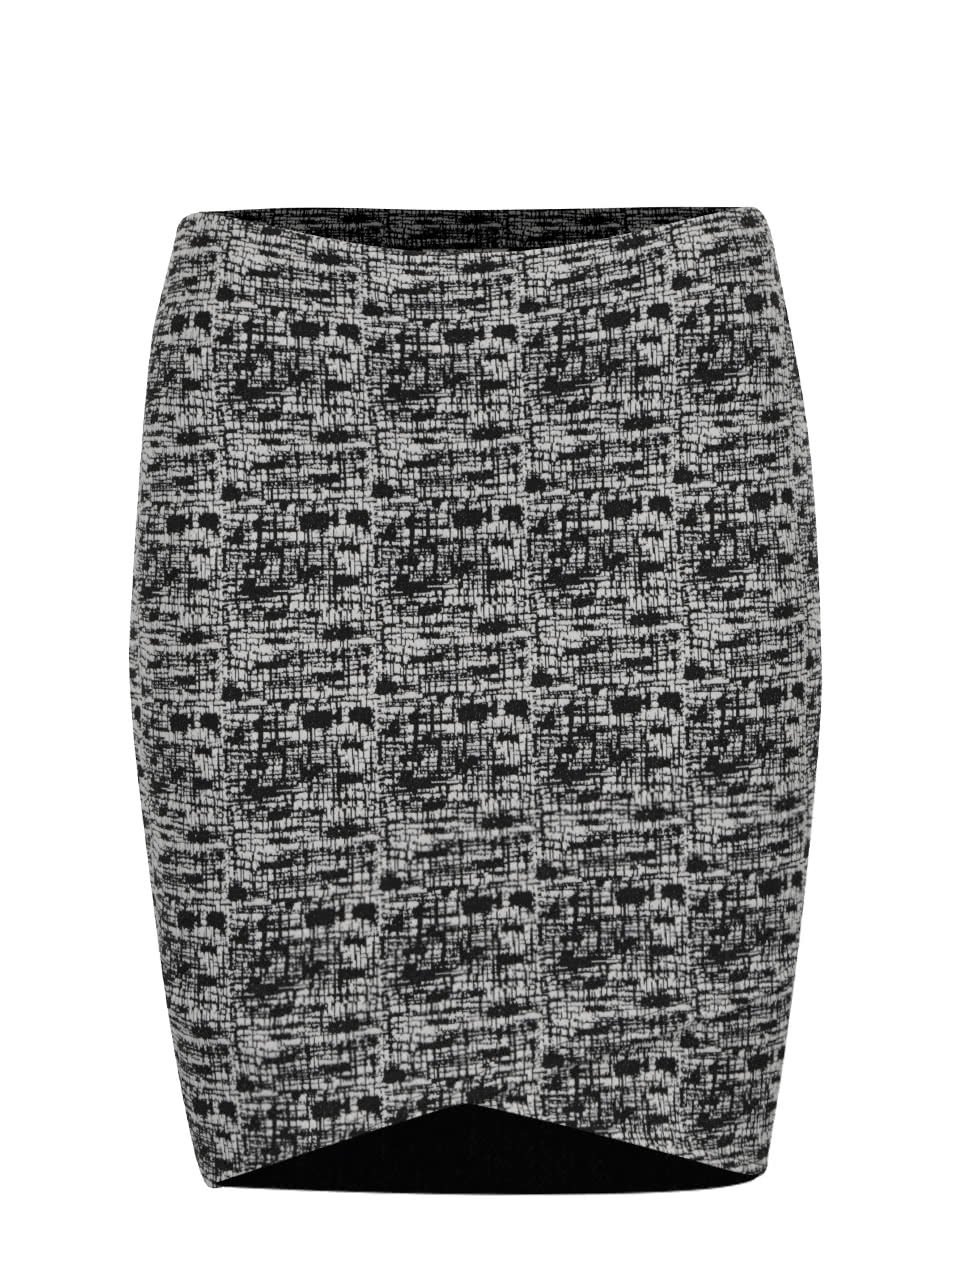 Černo-krémová vzorovaná sukně Miss Selfridge